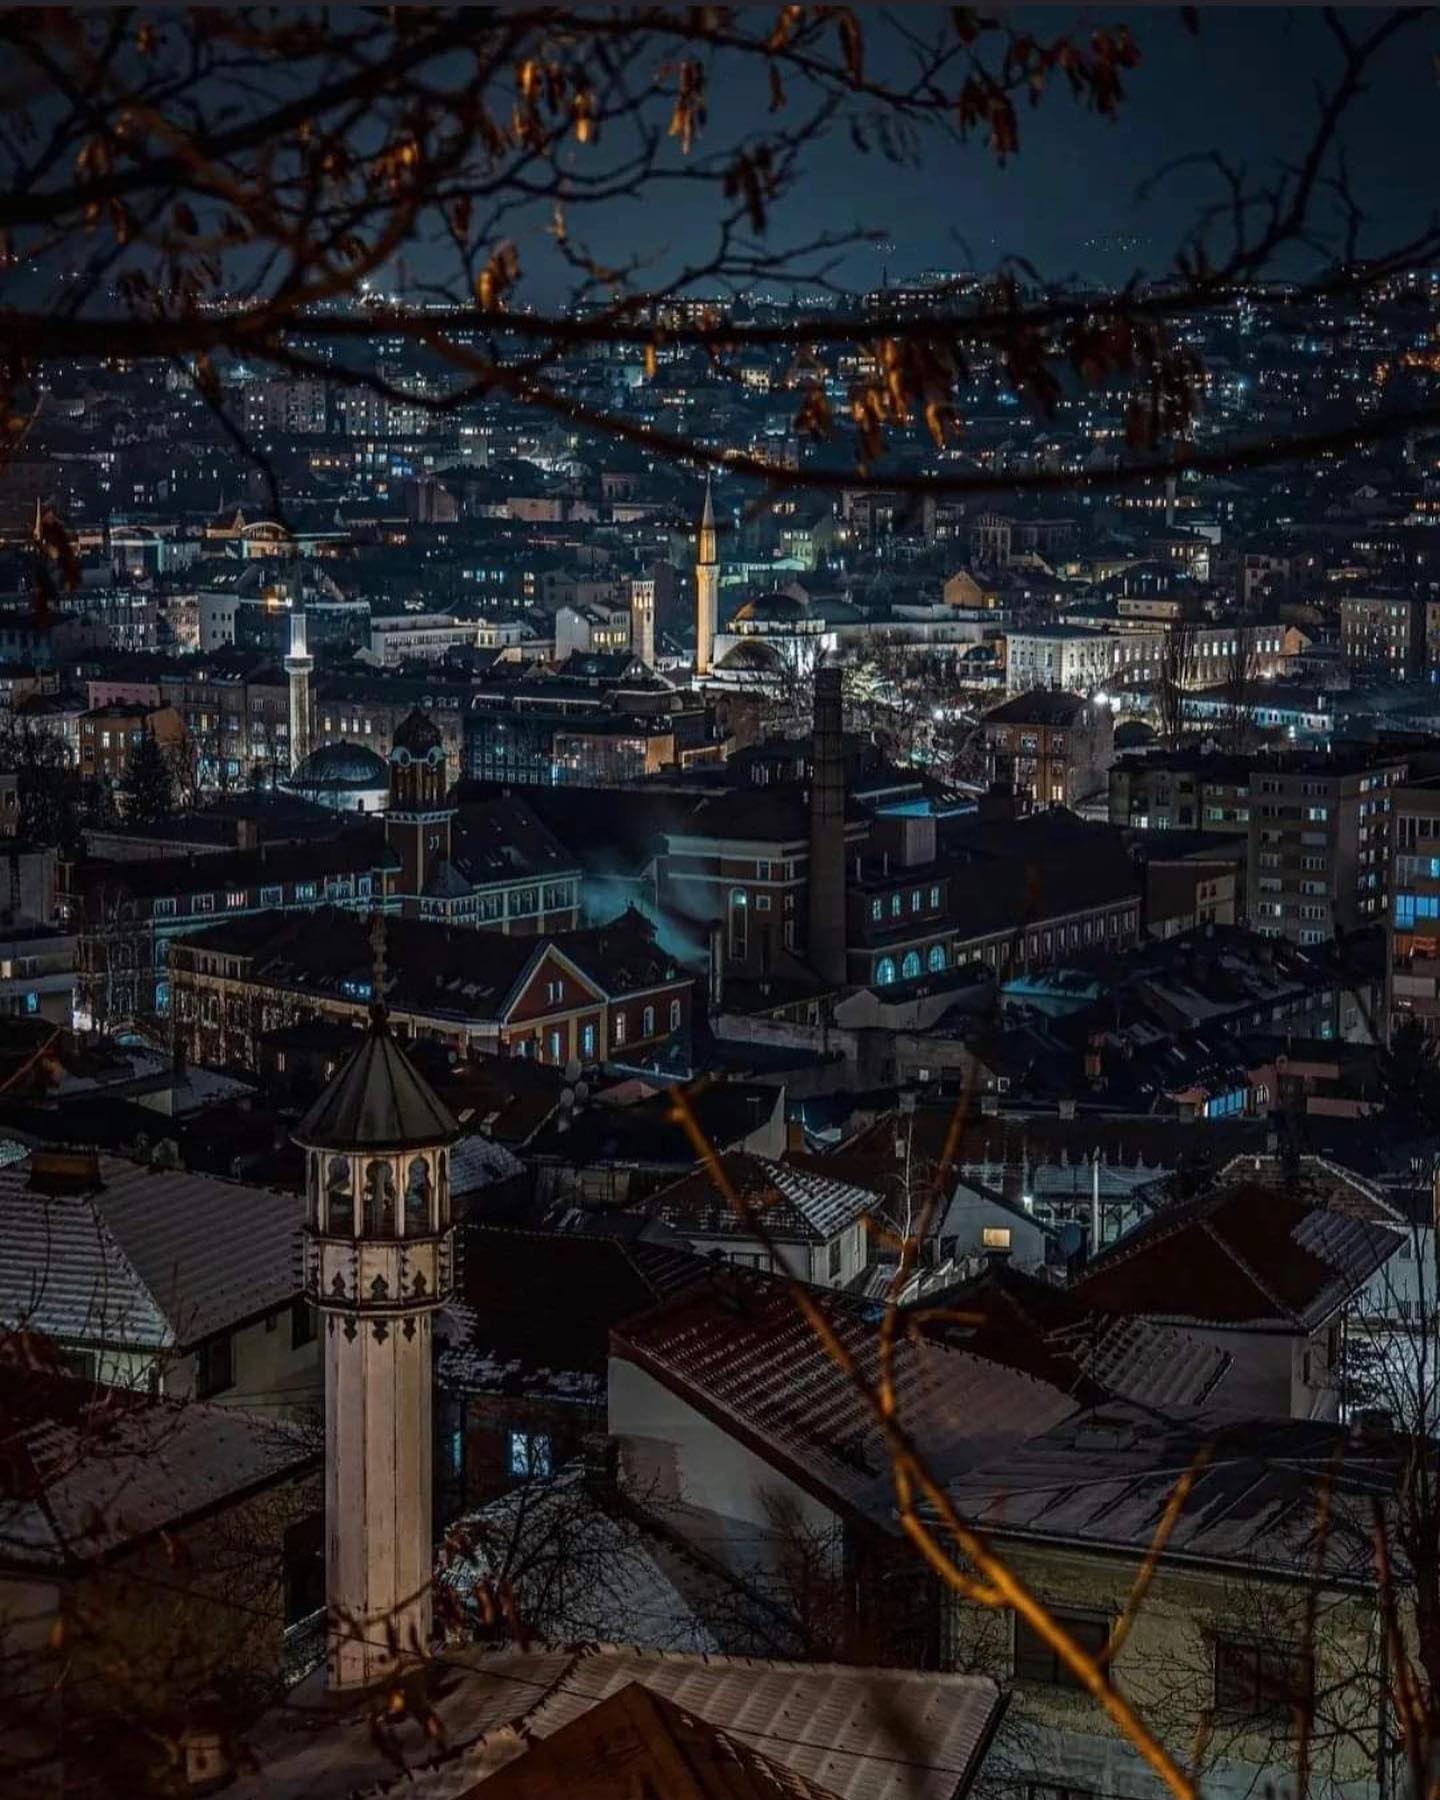 A night 🌙 in Sarajevo 💫